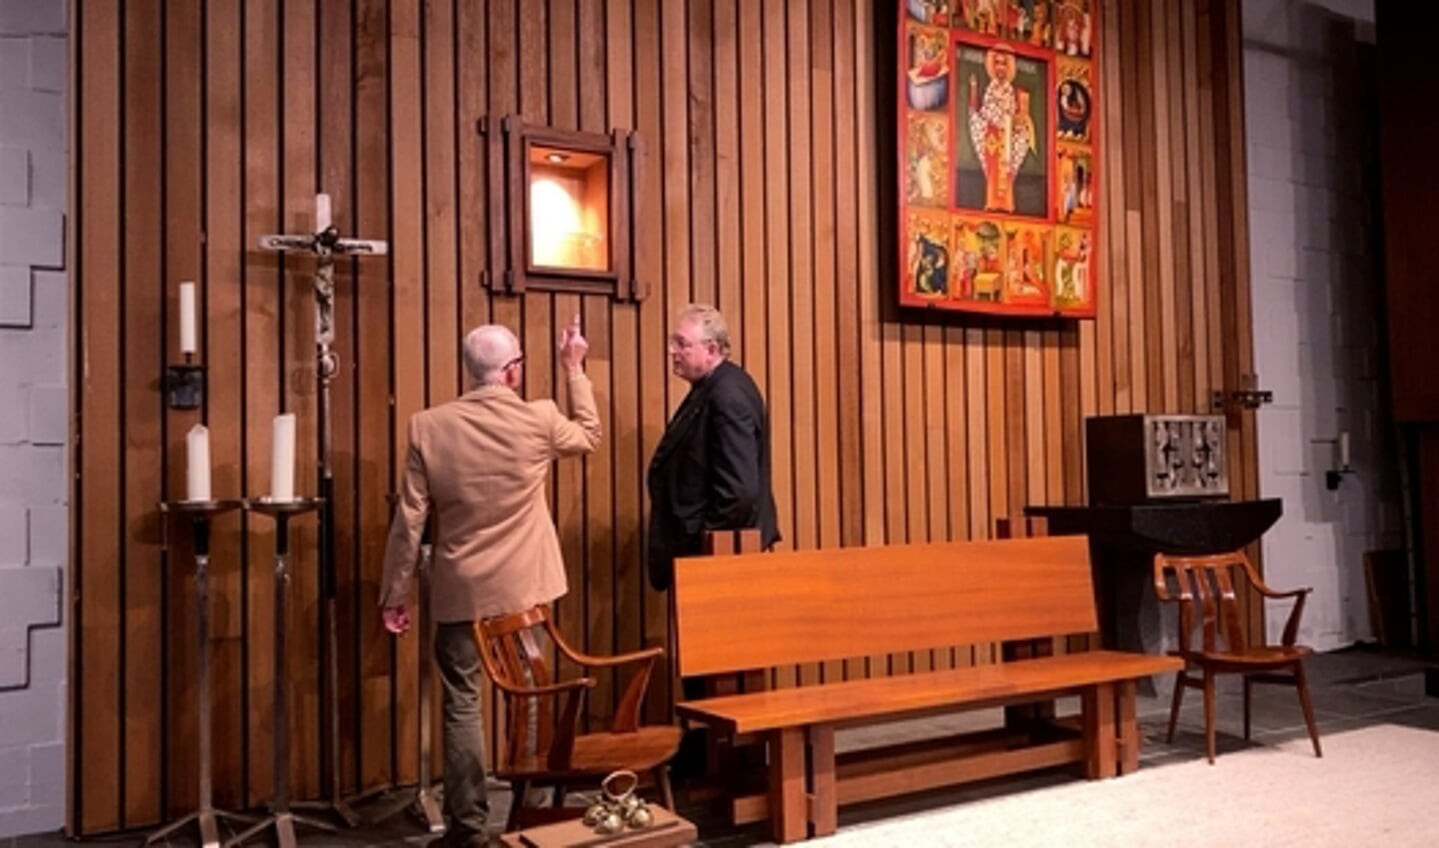 Bert Staal en pastoor Hogenelst bij het kastje waarin het reliek binnenkort geplaatst wordt